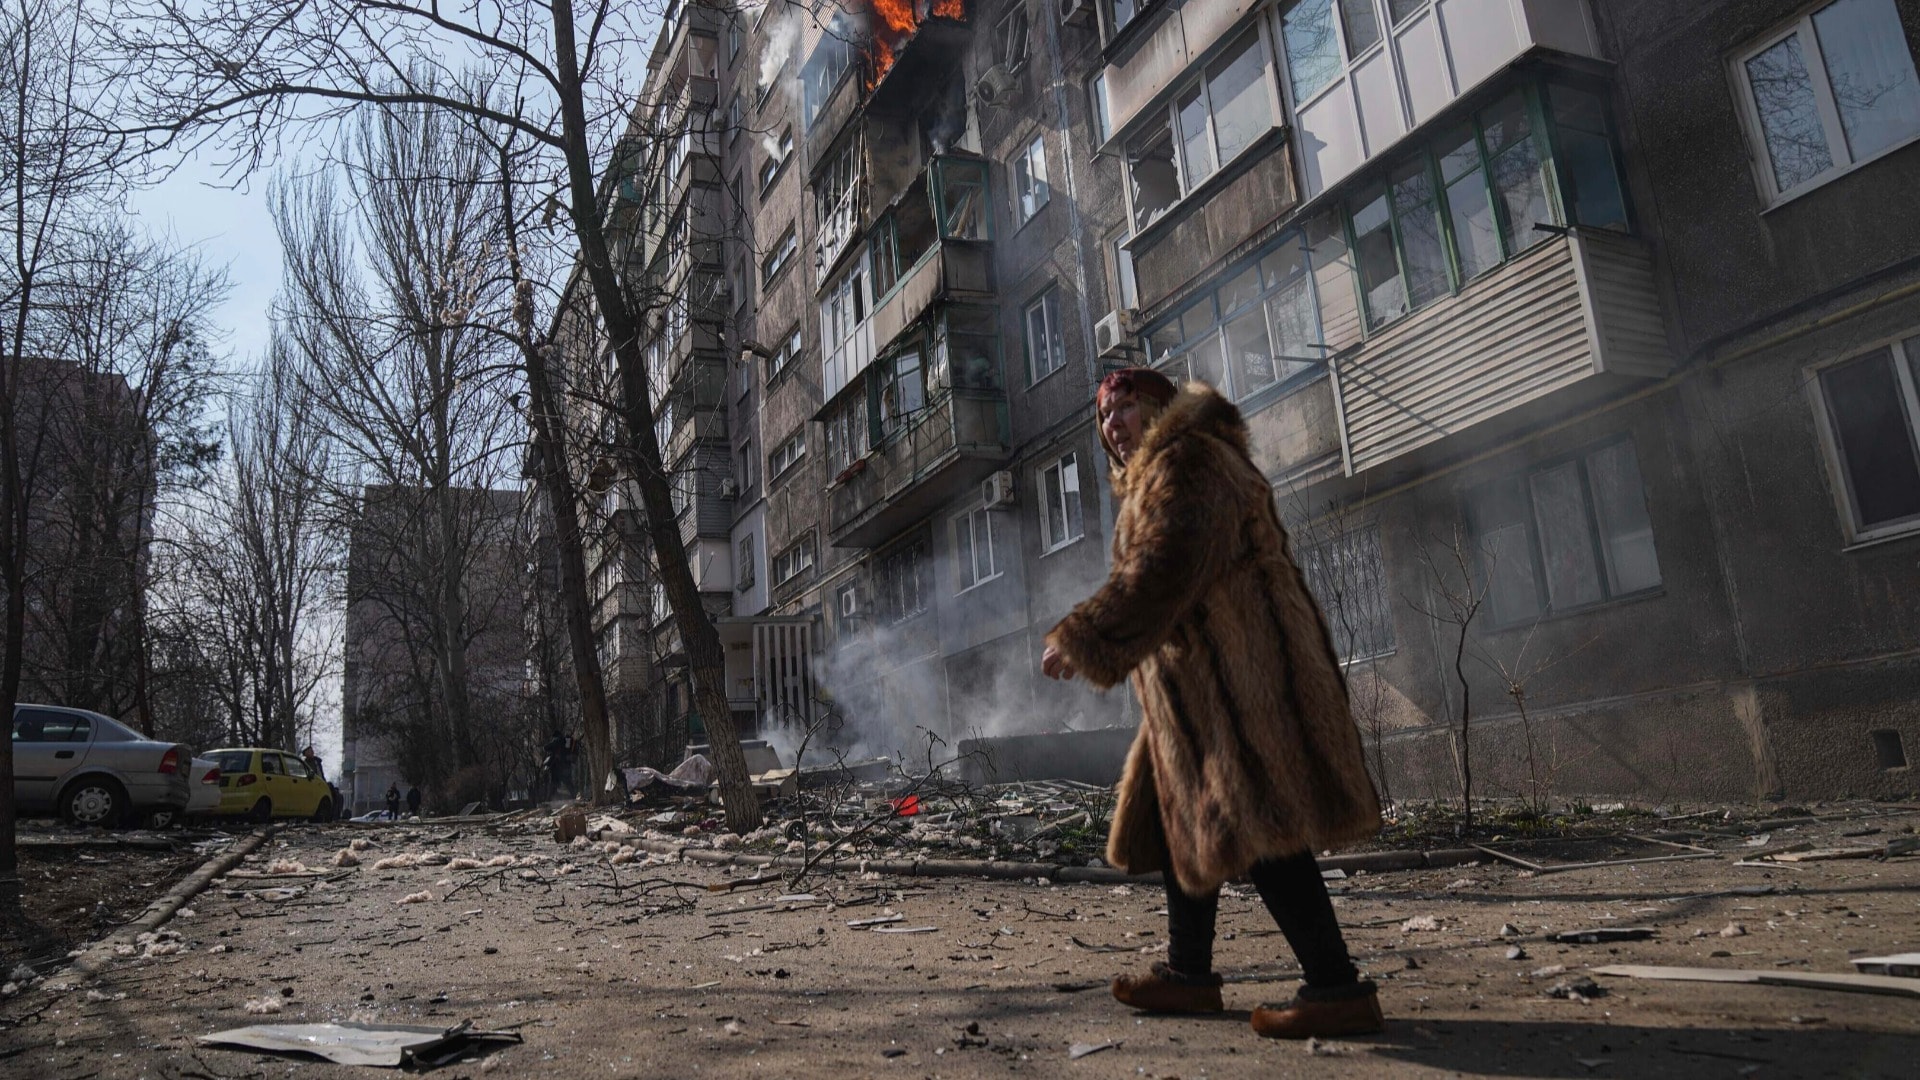 Pani, ukrajinská žena, zhrozene pozerá na zničený Mariupoľ